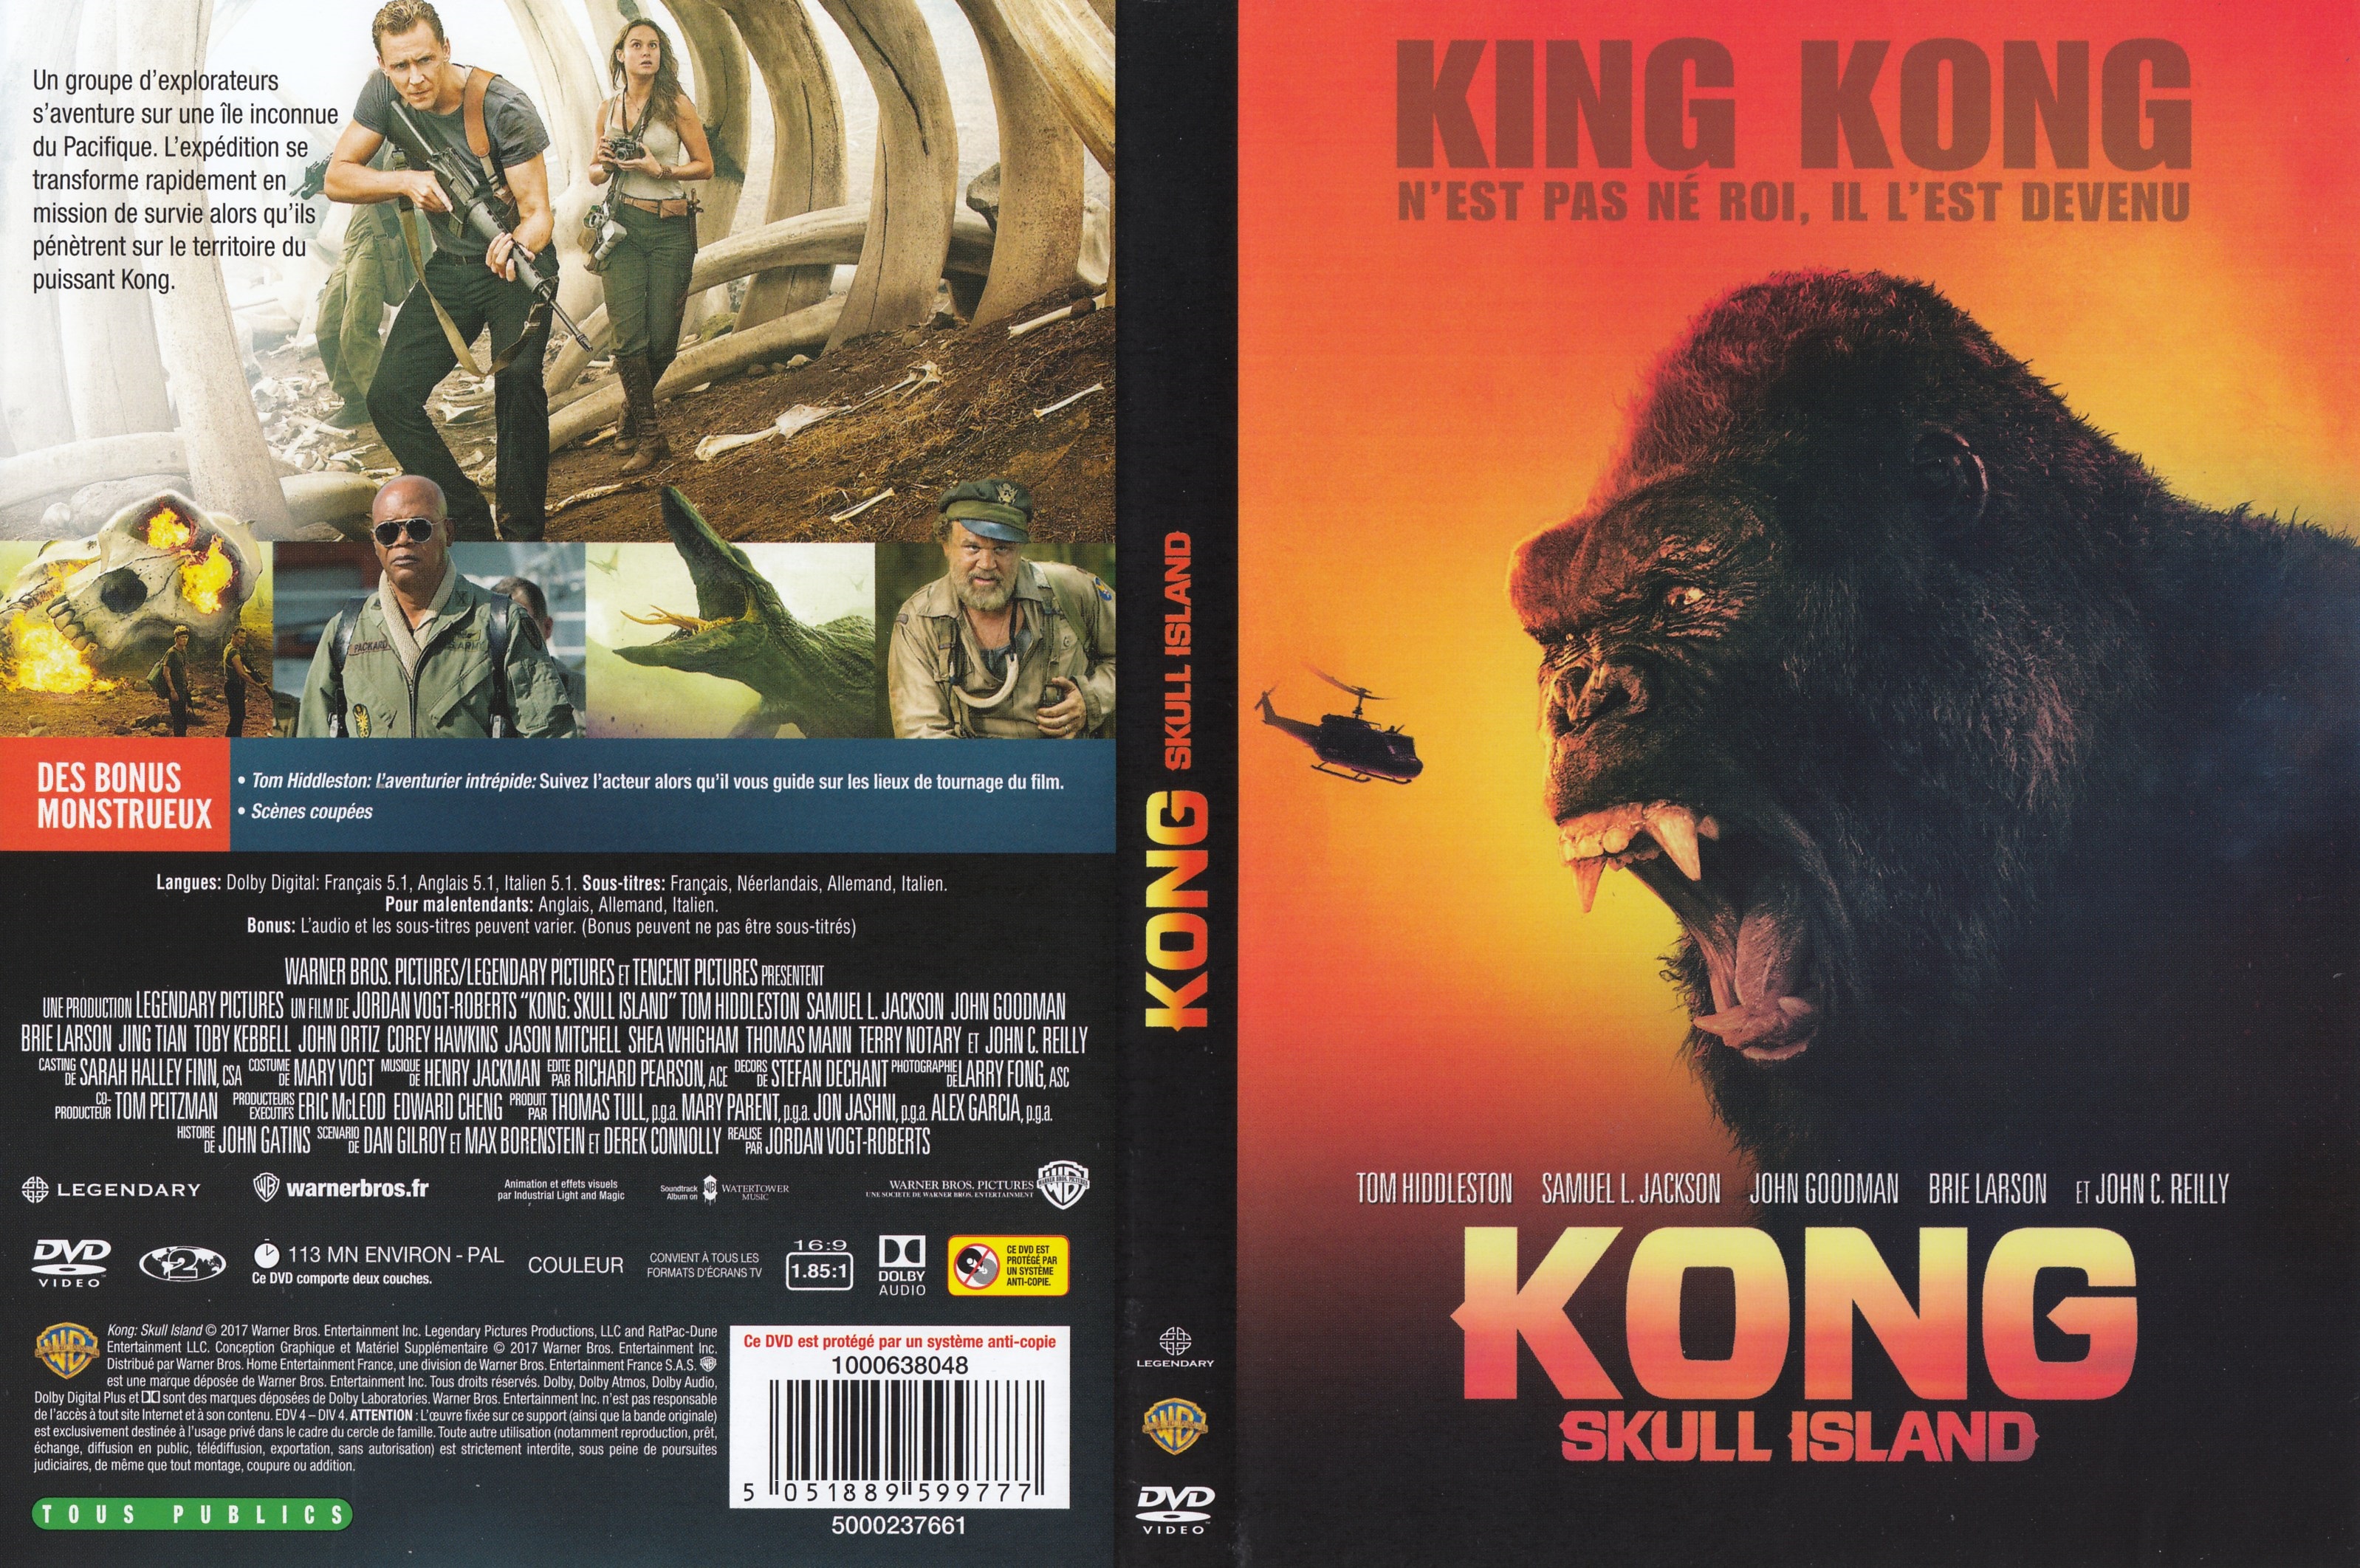 Jaquette DVD Kong: Skull Island